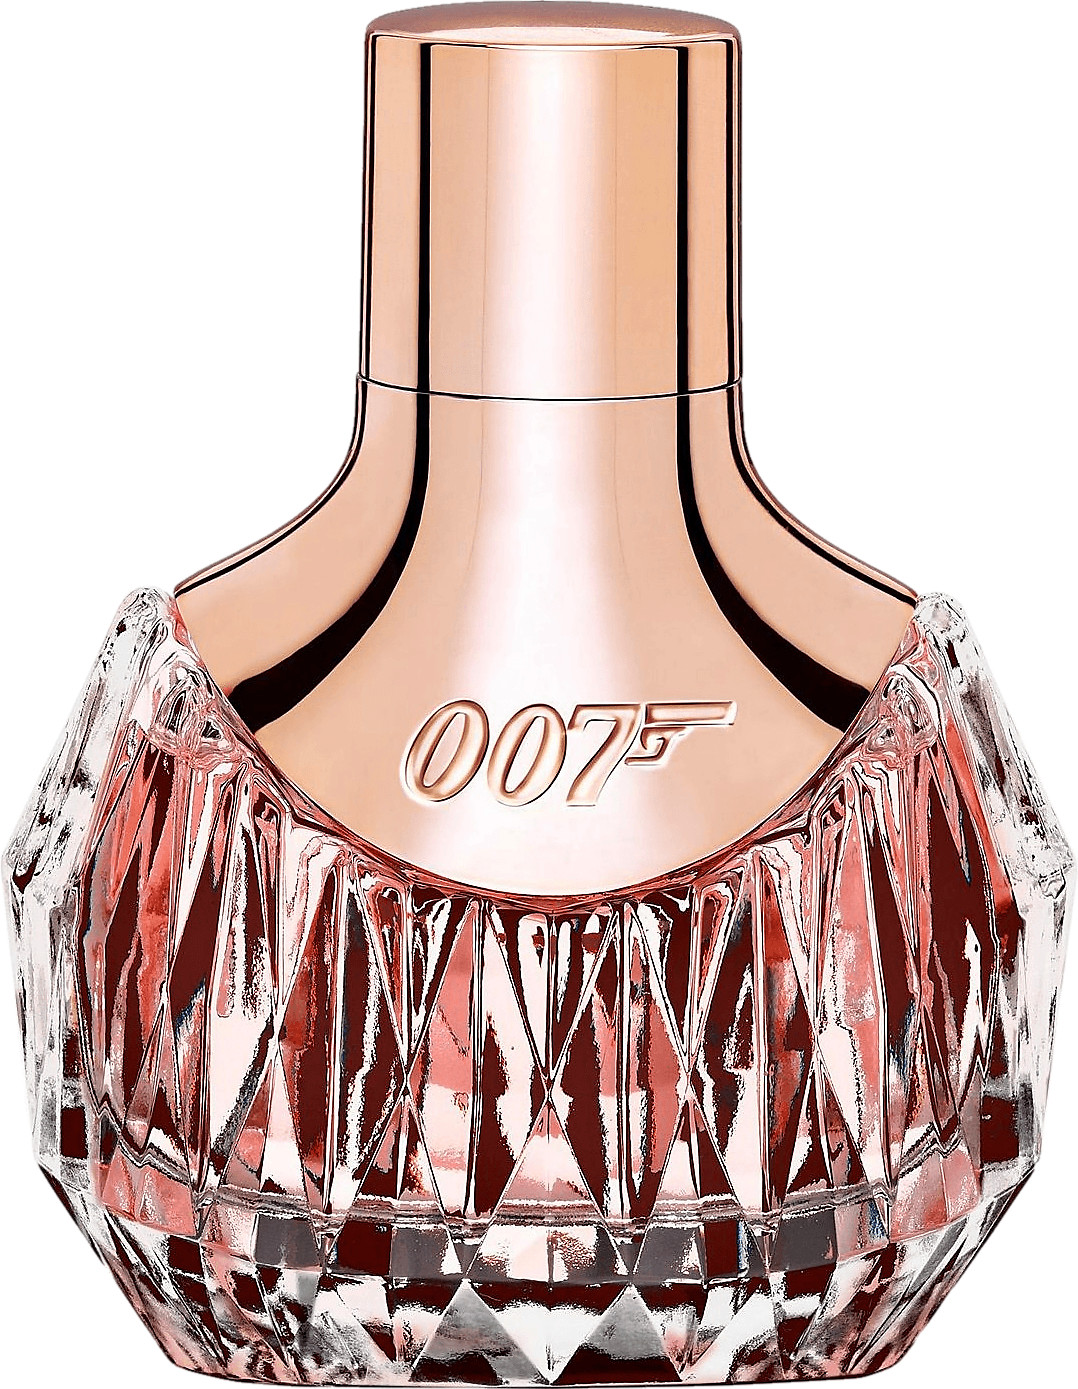 James Bond 007 for Women II Eau de Parfum desde 40,96 € | Compara